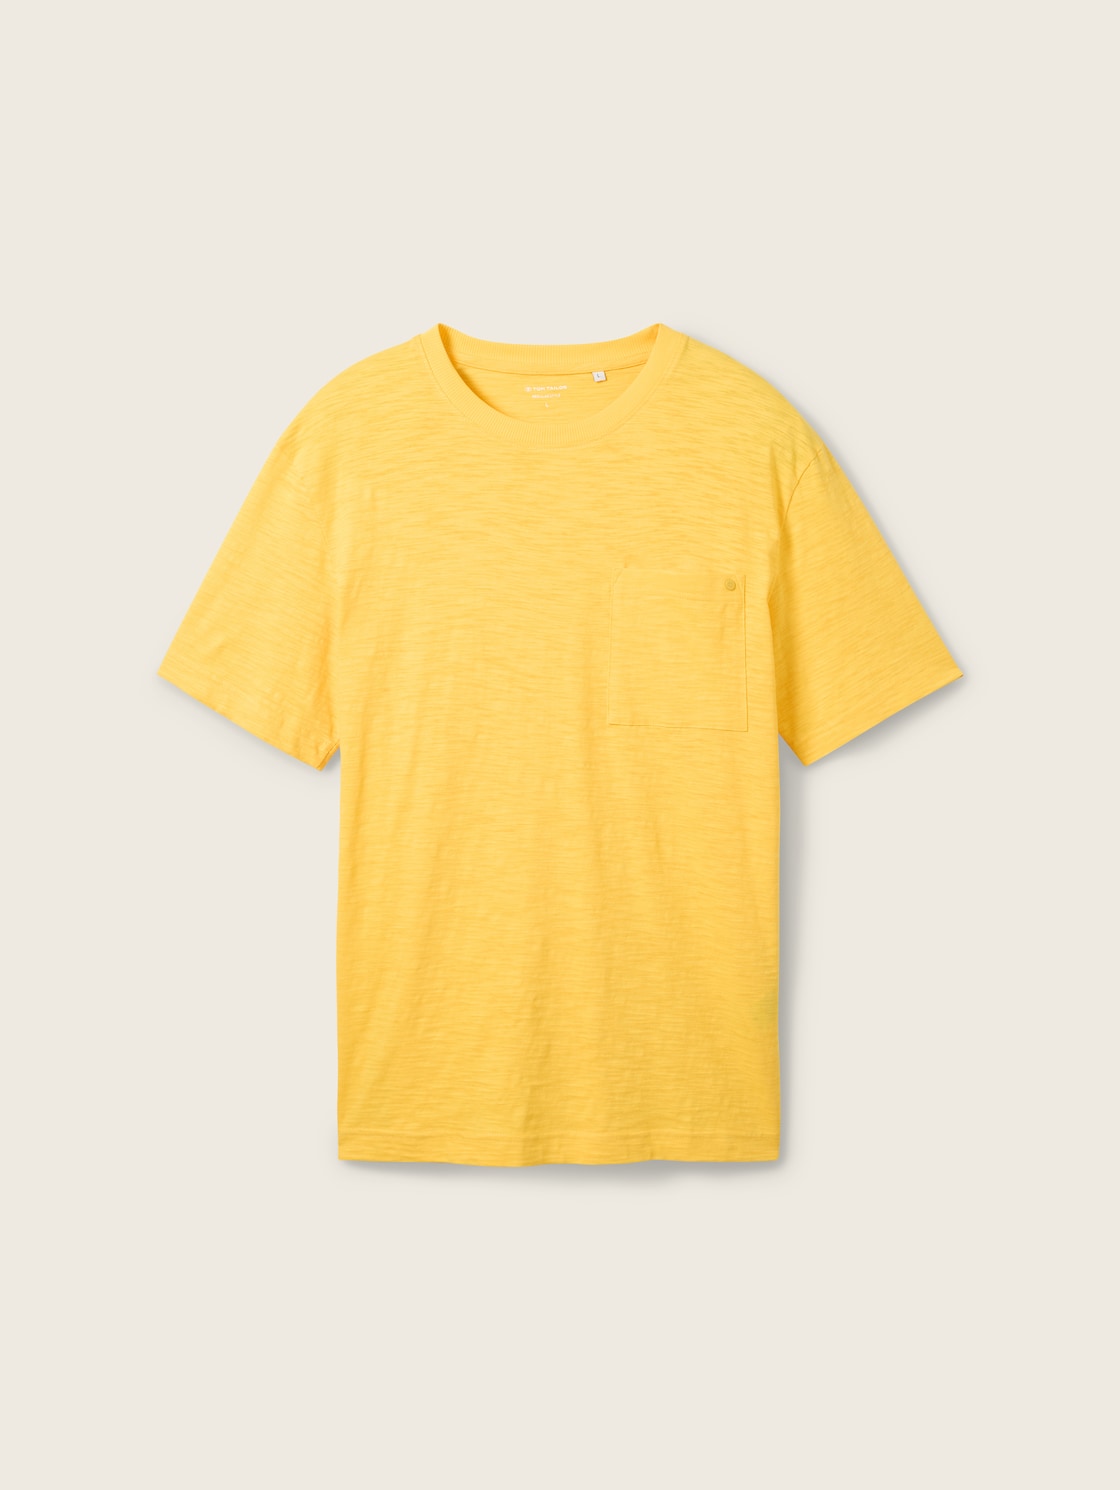 TOM TAILOR Herren Basic T-Shirt in Melange Optik, gelb, Melange Optik, Gr. M von Tom Tailor